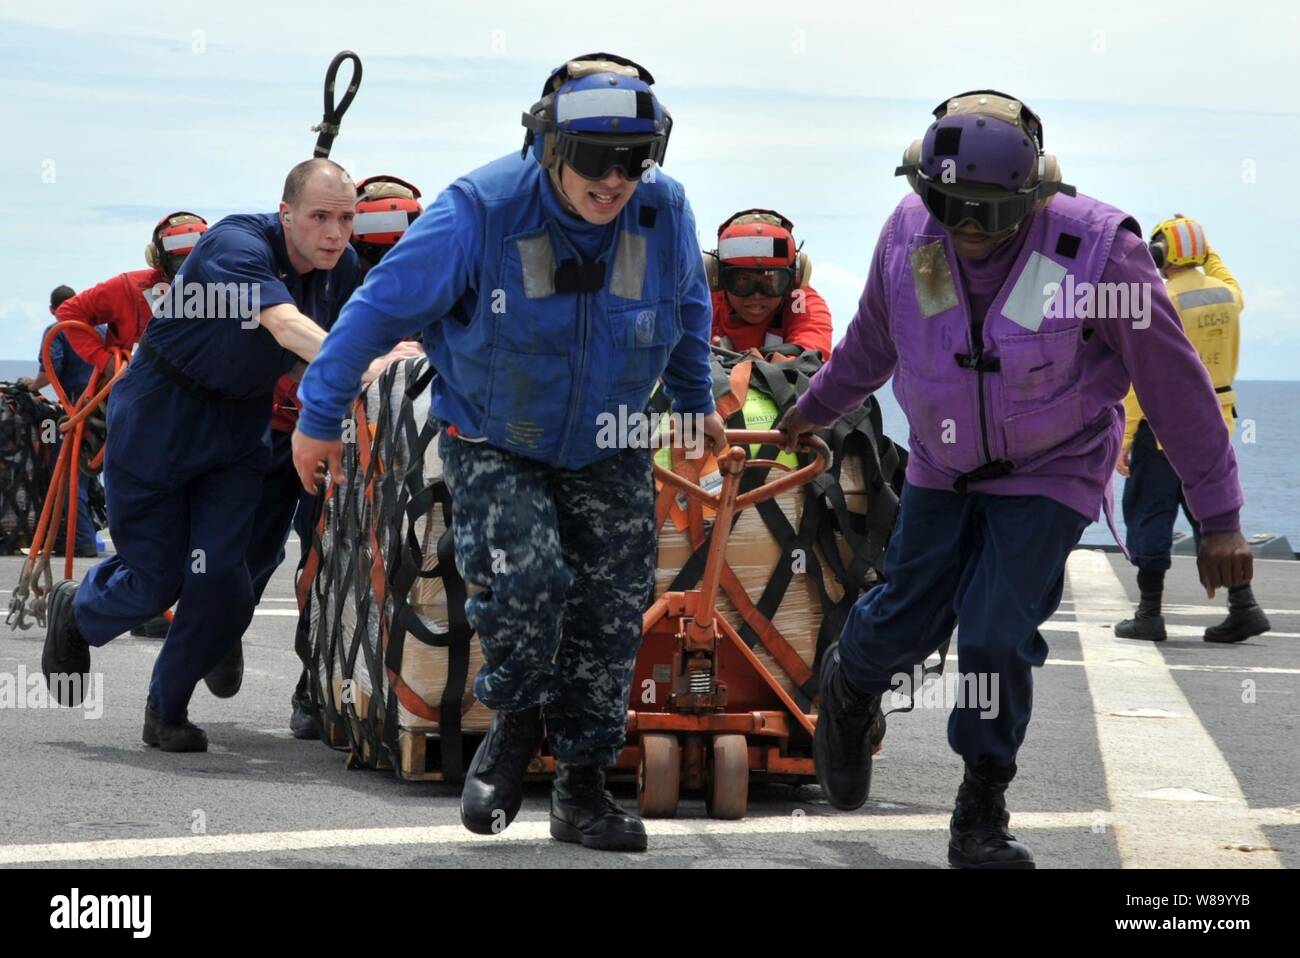 Us-Marine Seeleute an Bord des US-amerikanischen 7 Flotte Flaggschiff USS Blue Ridge (LCC 19) Paletten der humanitären Hilfe und Katastrophenhilfe Kits über den shipís Flight Deck während eines laufenden Auffüllung mit der Flotte Auffüllung öler USNS Rappahannock (T-AO 204) im Südchinesischen Meer am 12. März 2011. Die Blue Ridge geladen die Kits, um sicherzustellen, dass die Crew bereit war, zur Unterstützung der Erdbeben und Tsunami Hilfsaktionen in Japan, wie verwiesen. Stockfoto